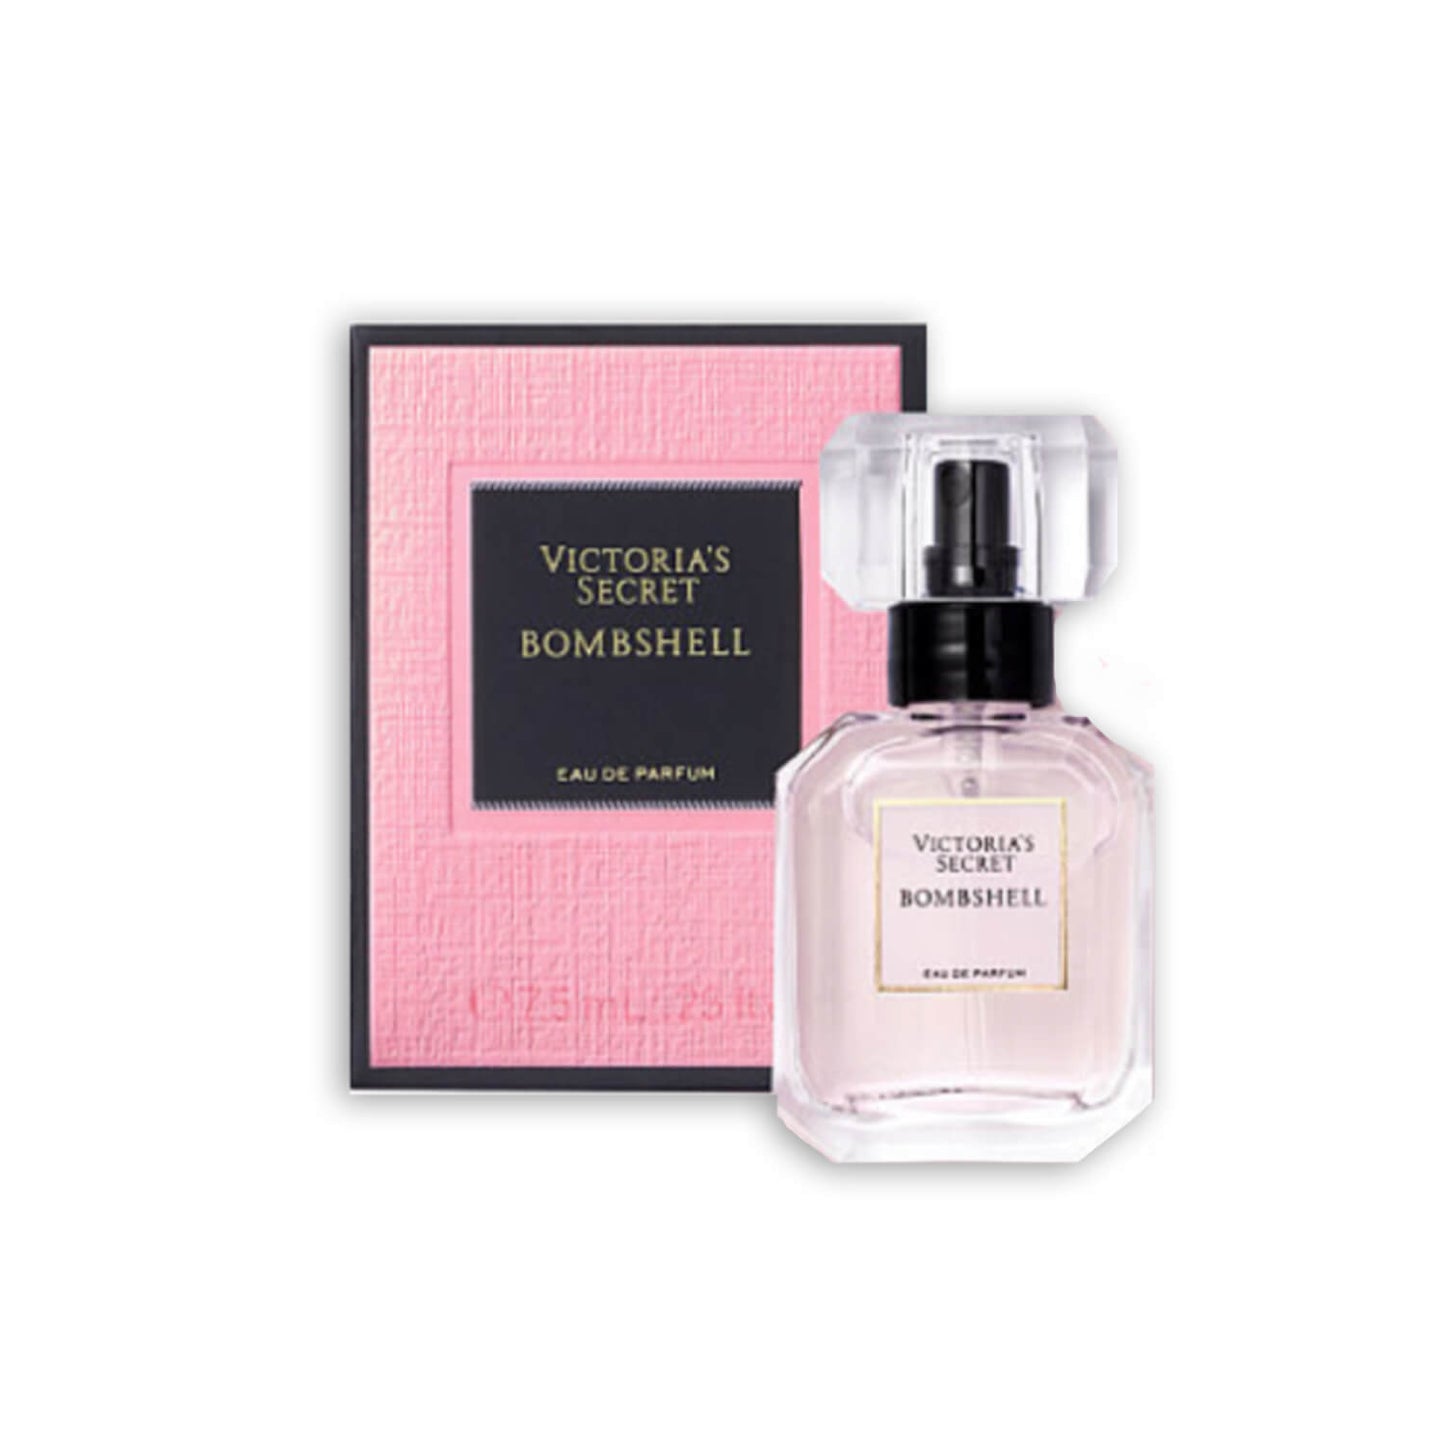 Victoria's Secret Eau de Parfum - Bombshell 7.5ml